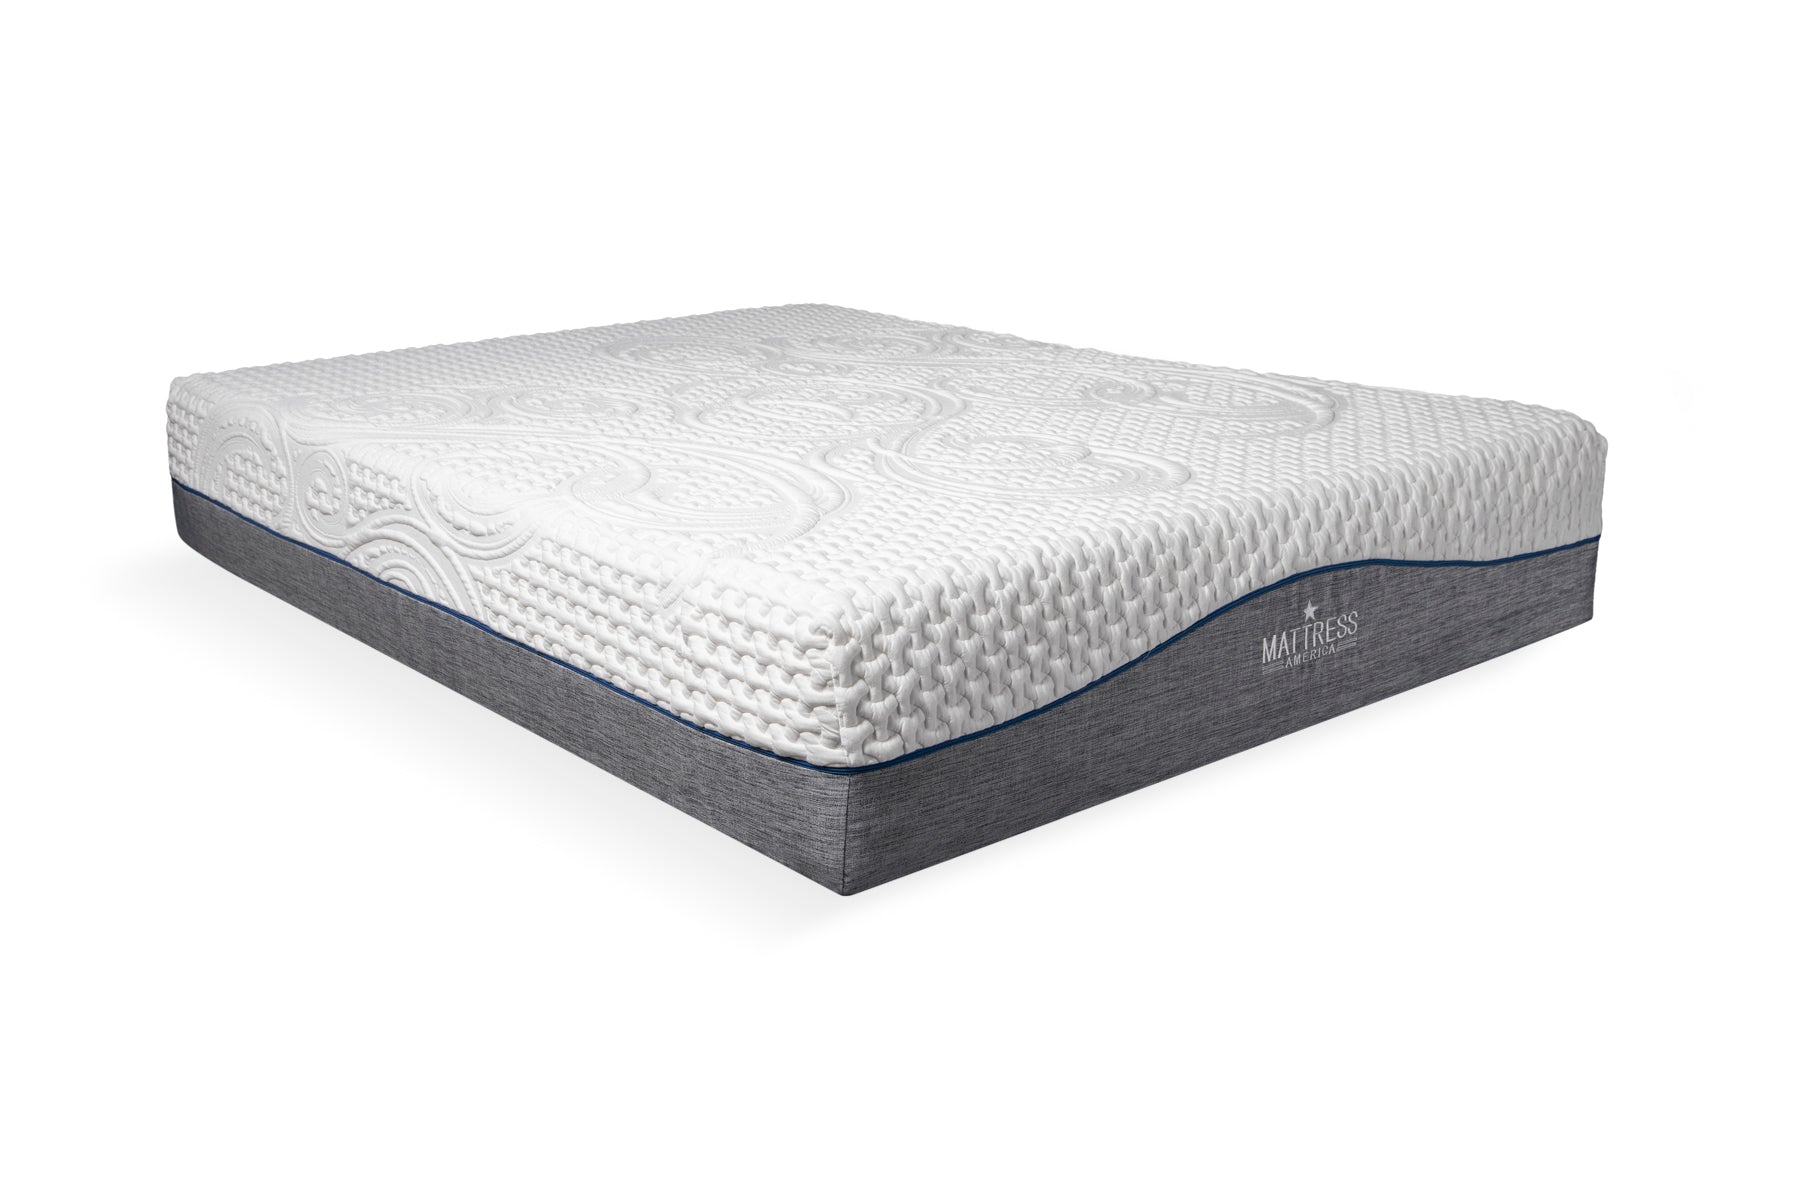 12 inch gel memory foam mattress full